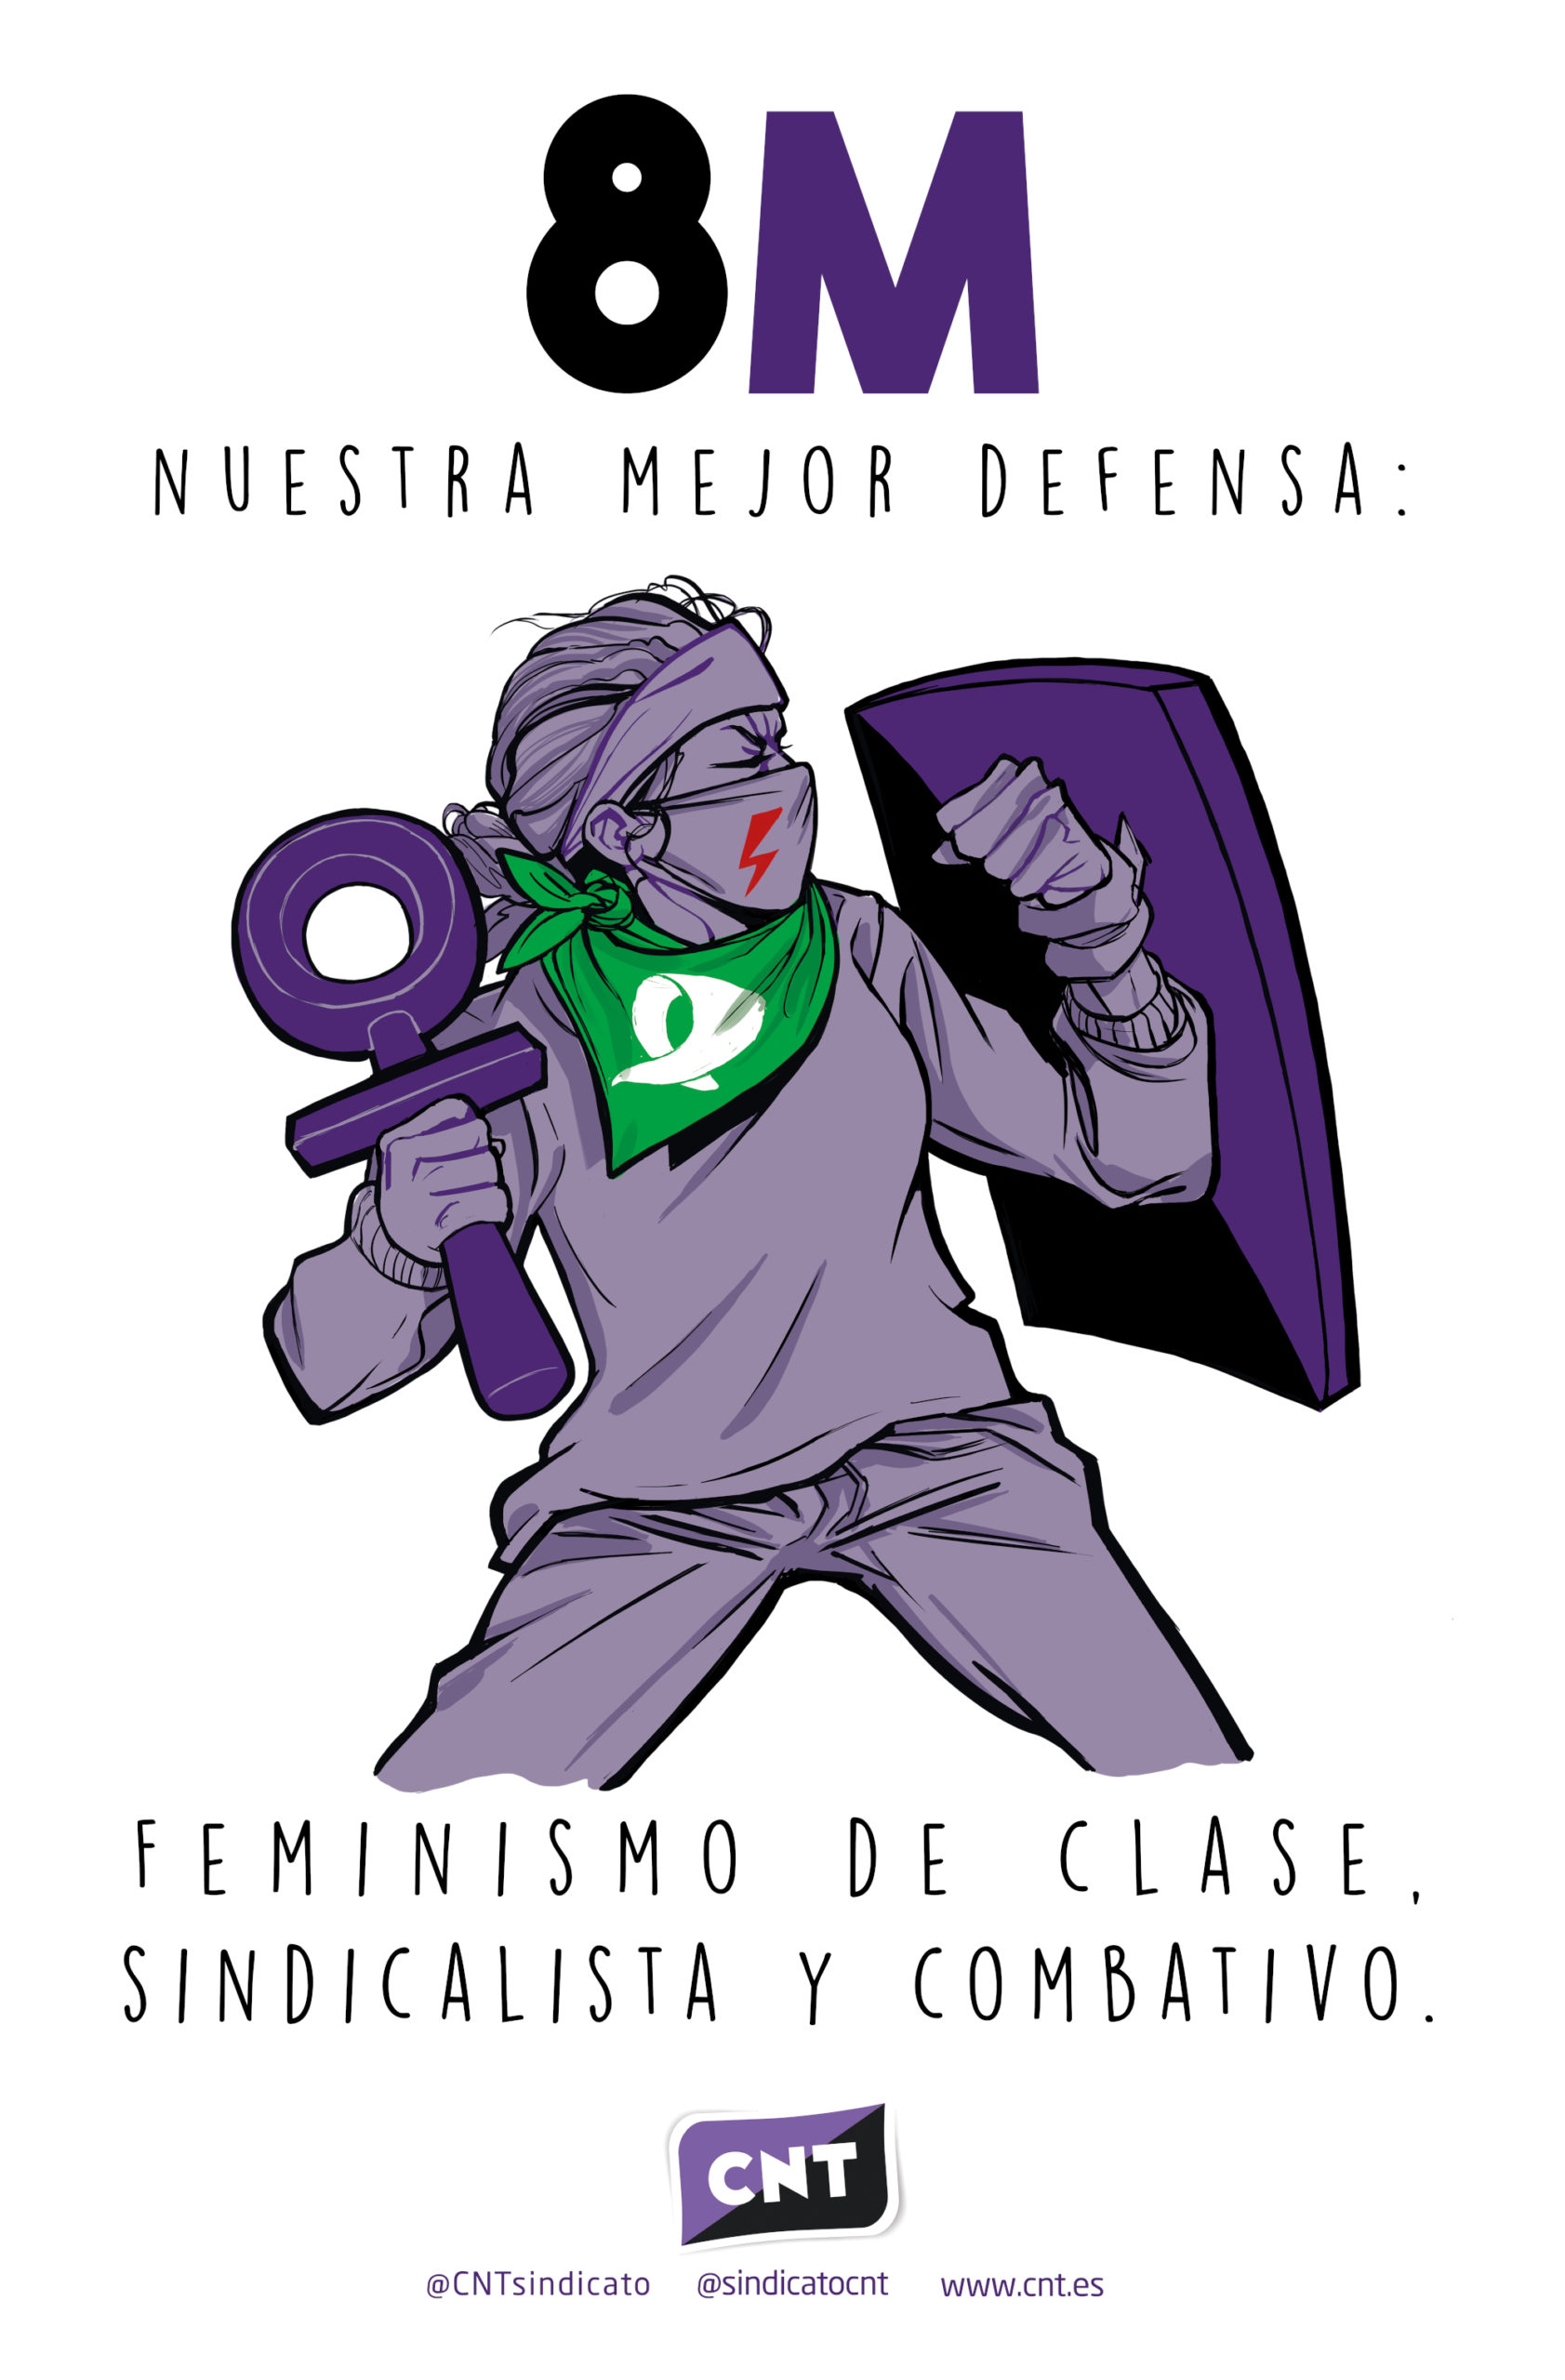 [8M] Nuestra mejor defensa: feminismo de clase, sindicalista y combativo